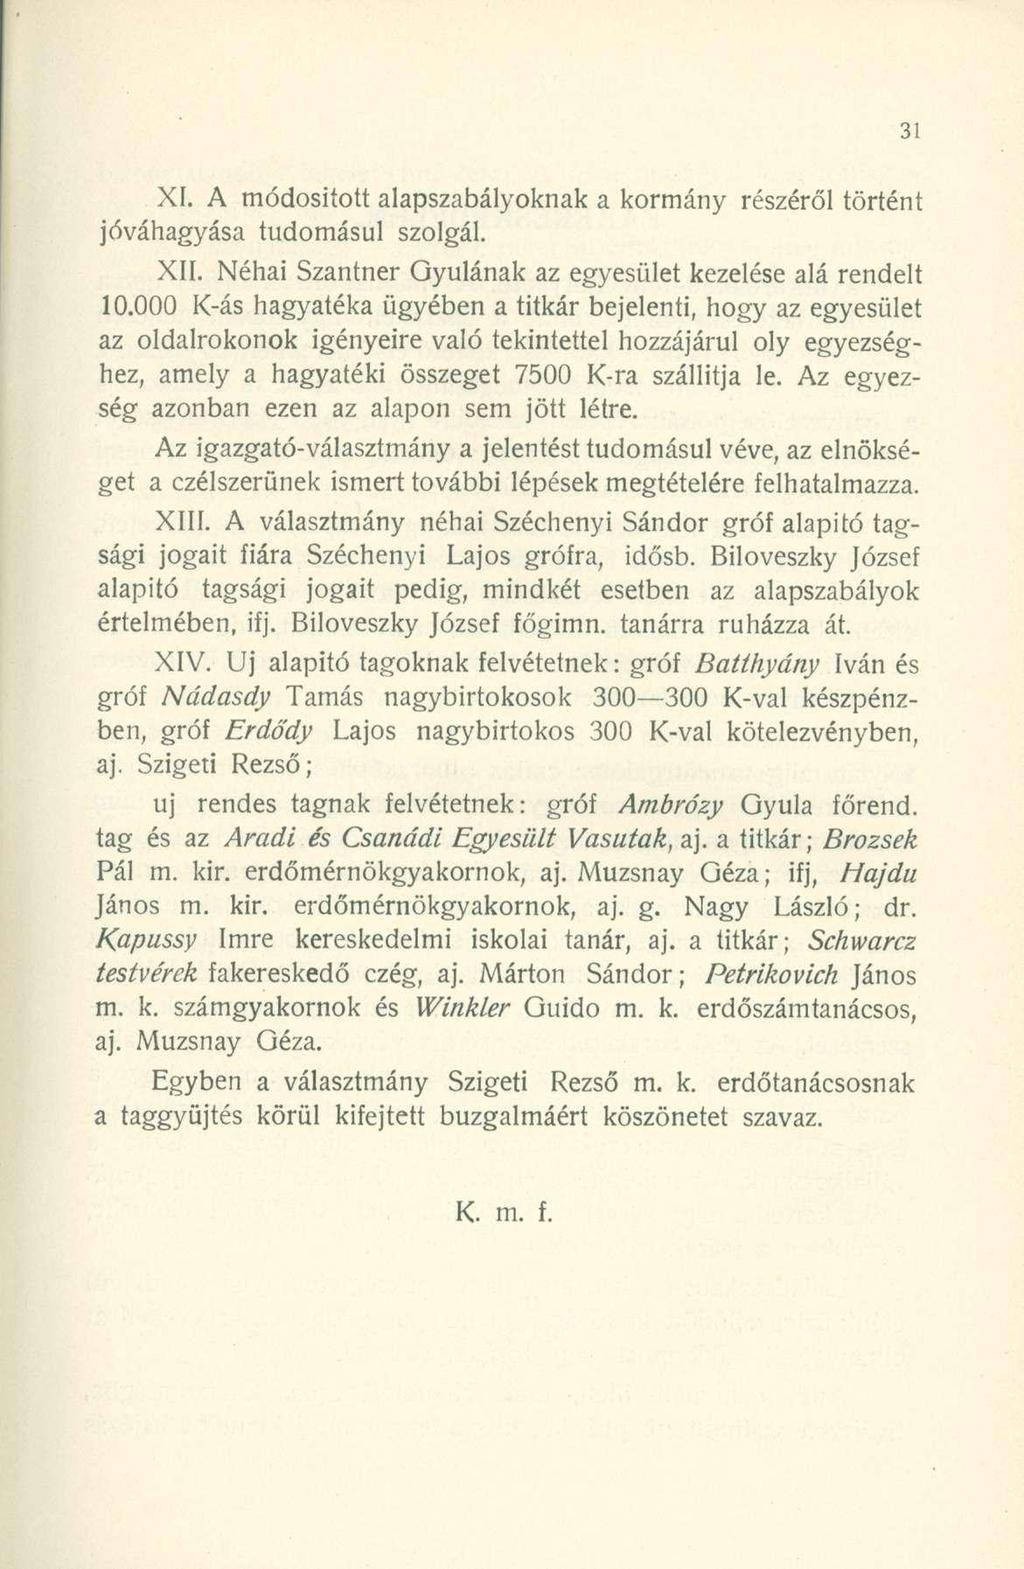 XI. A módosított alapszabályoknak a kormány részéről történt jóváhagyása tudomásul szolgál. XII. Néhai Szantner Gyulának az egyesület kezelése alá rendelt 10.